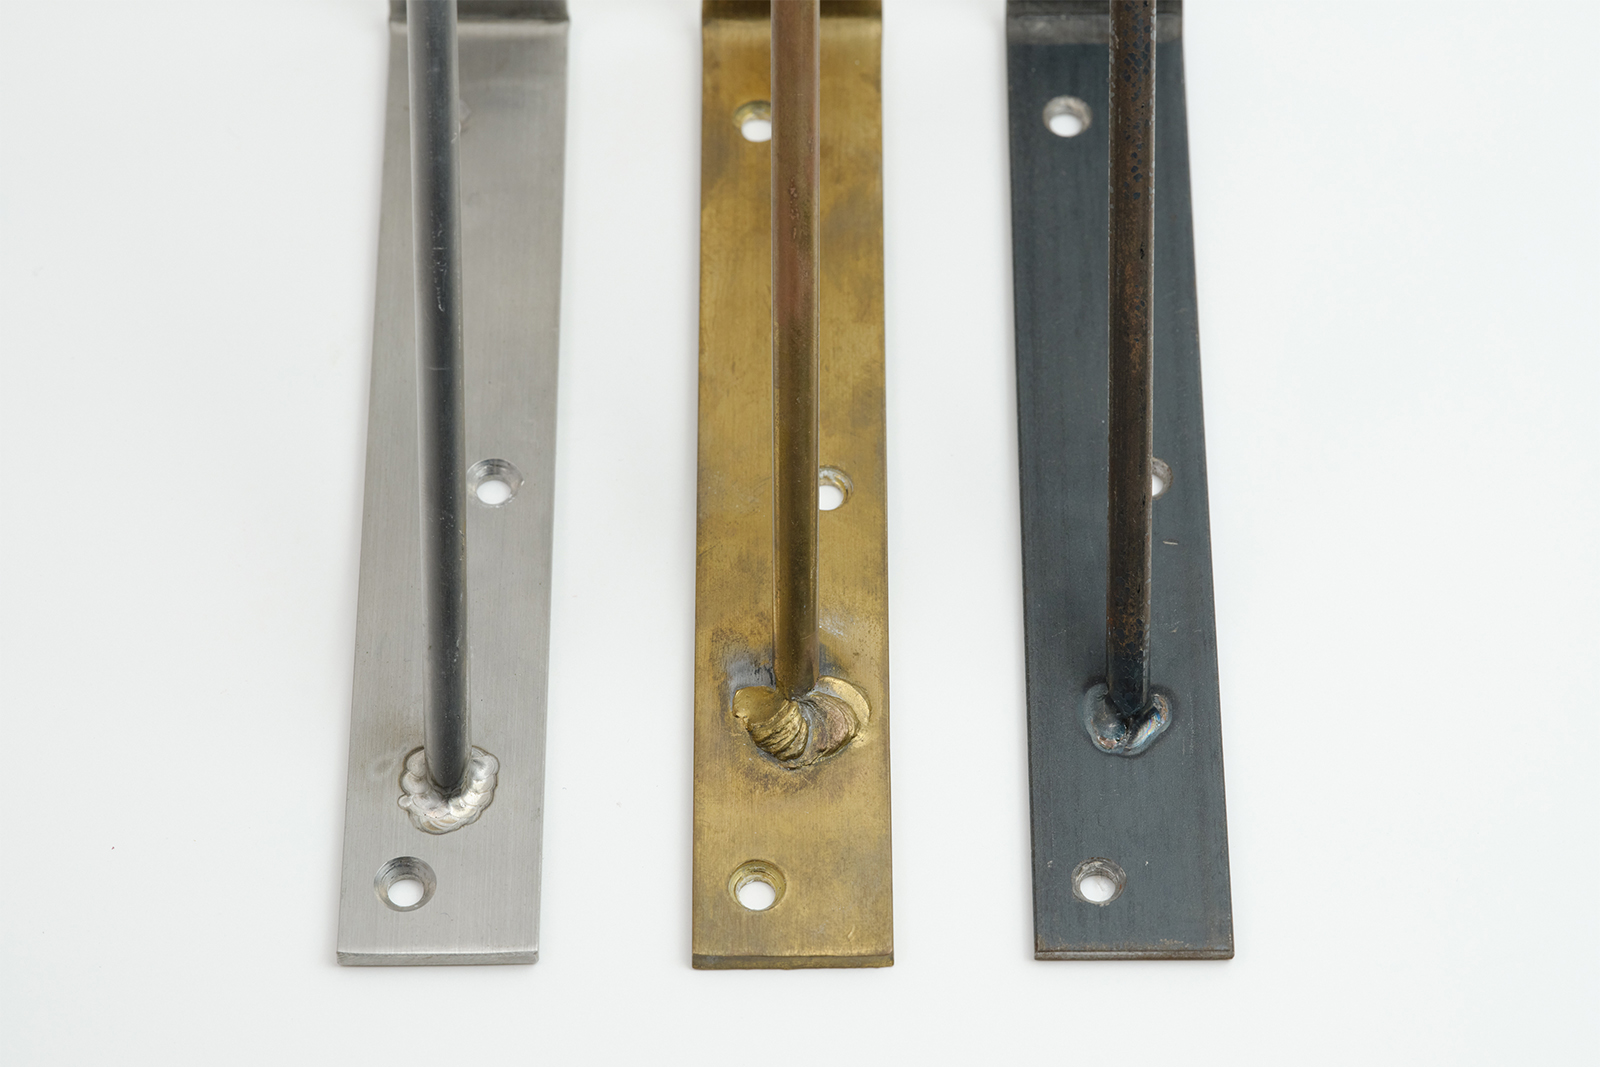 棚受け金物 ステンレス D60 PS-BK001-10-G017 素材は全部で3種類。左から、ステンレス・真鍮・鉄